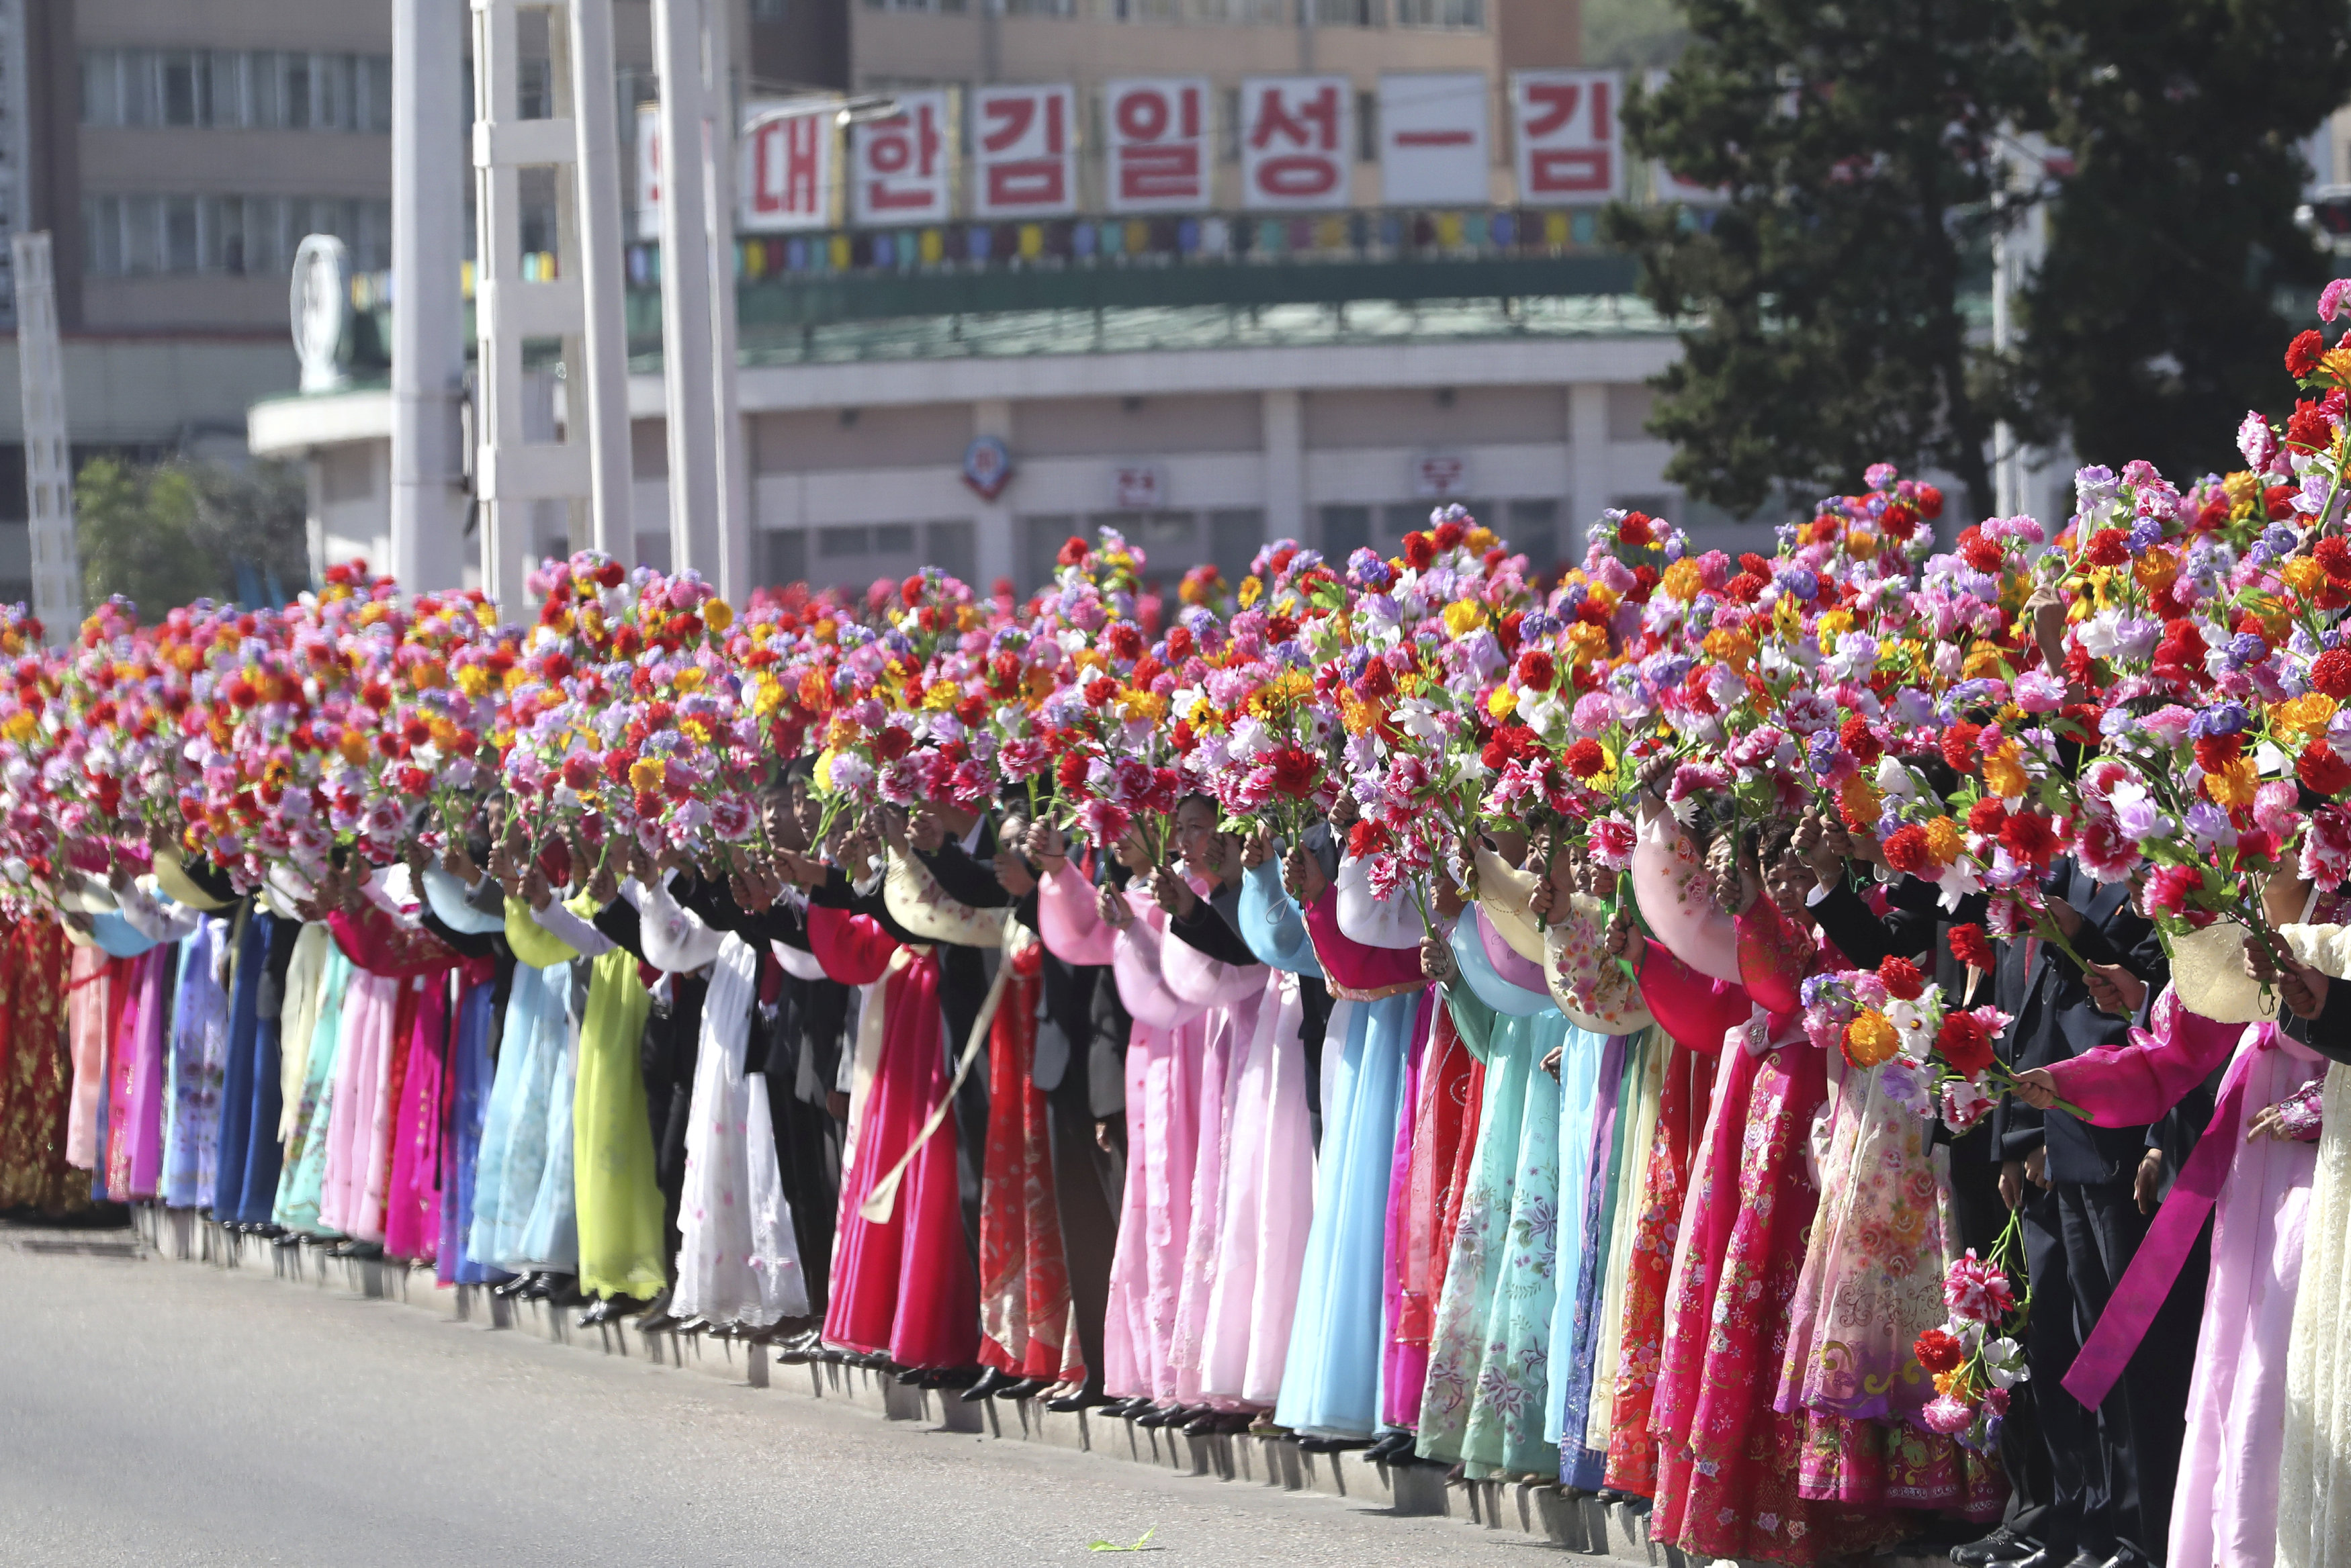 الورود والأزياء المبهجة هيمنت على استقبال مواطنو كوريا الشمالية لضيفهم